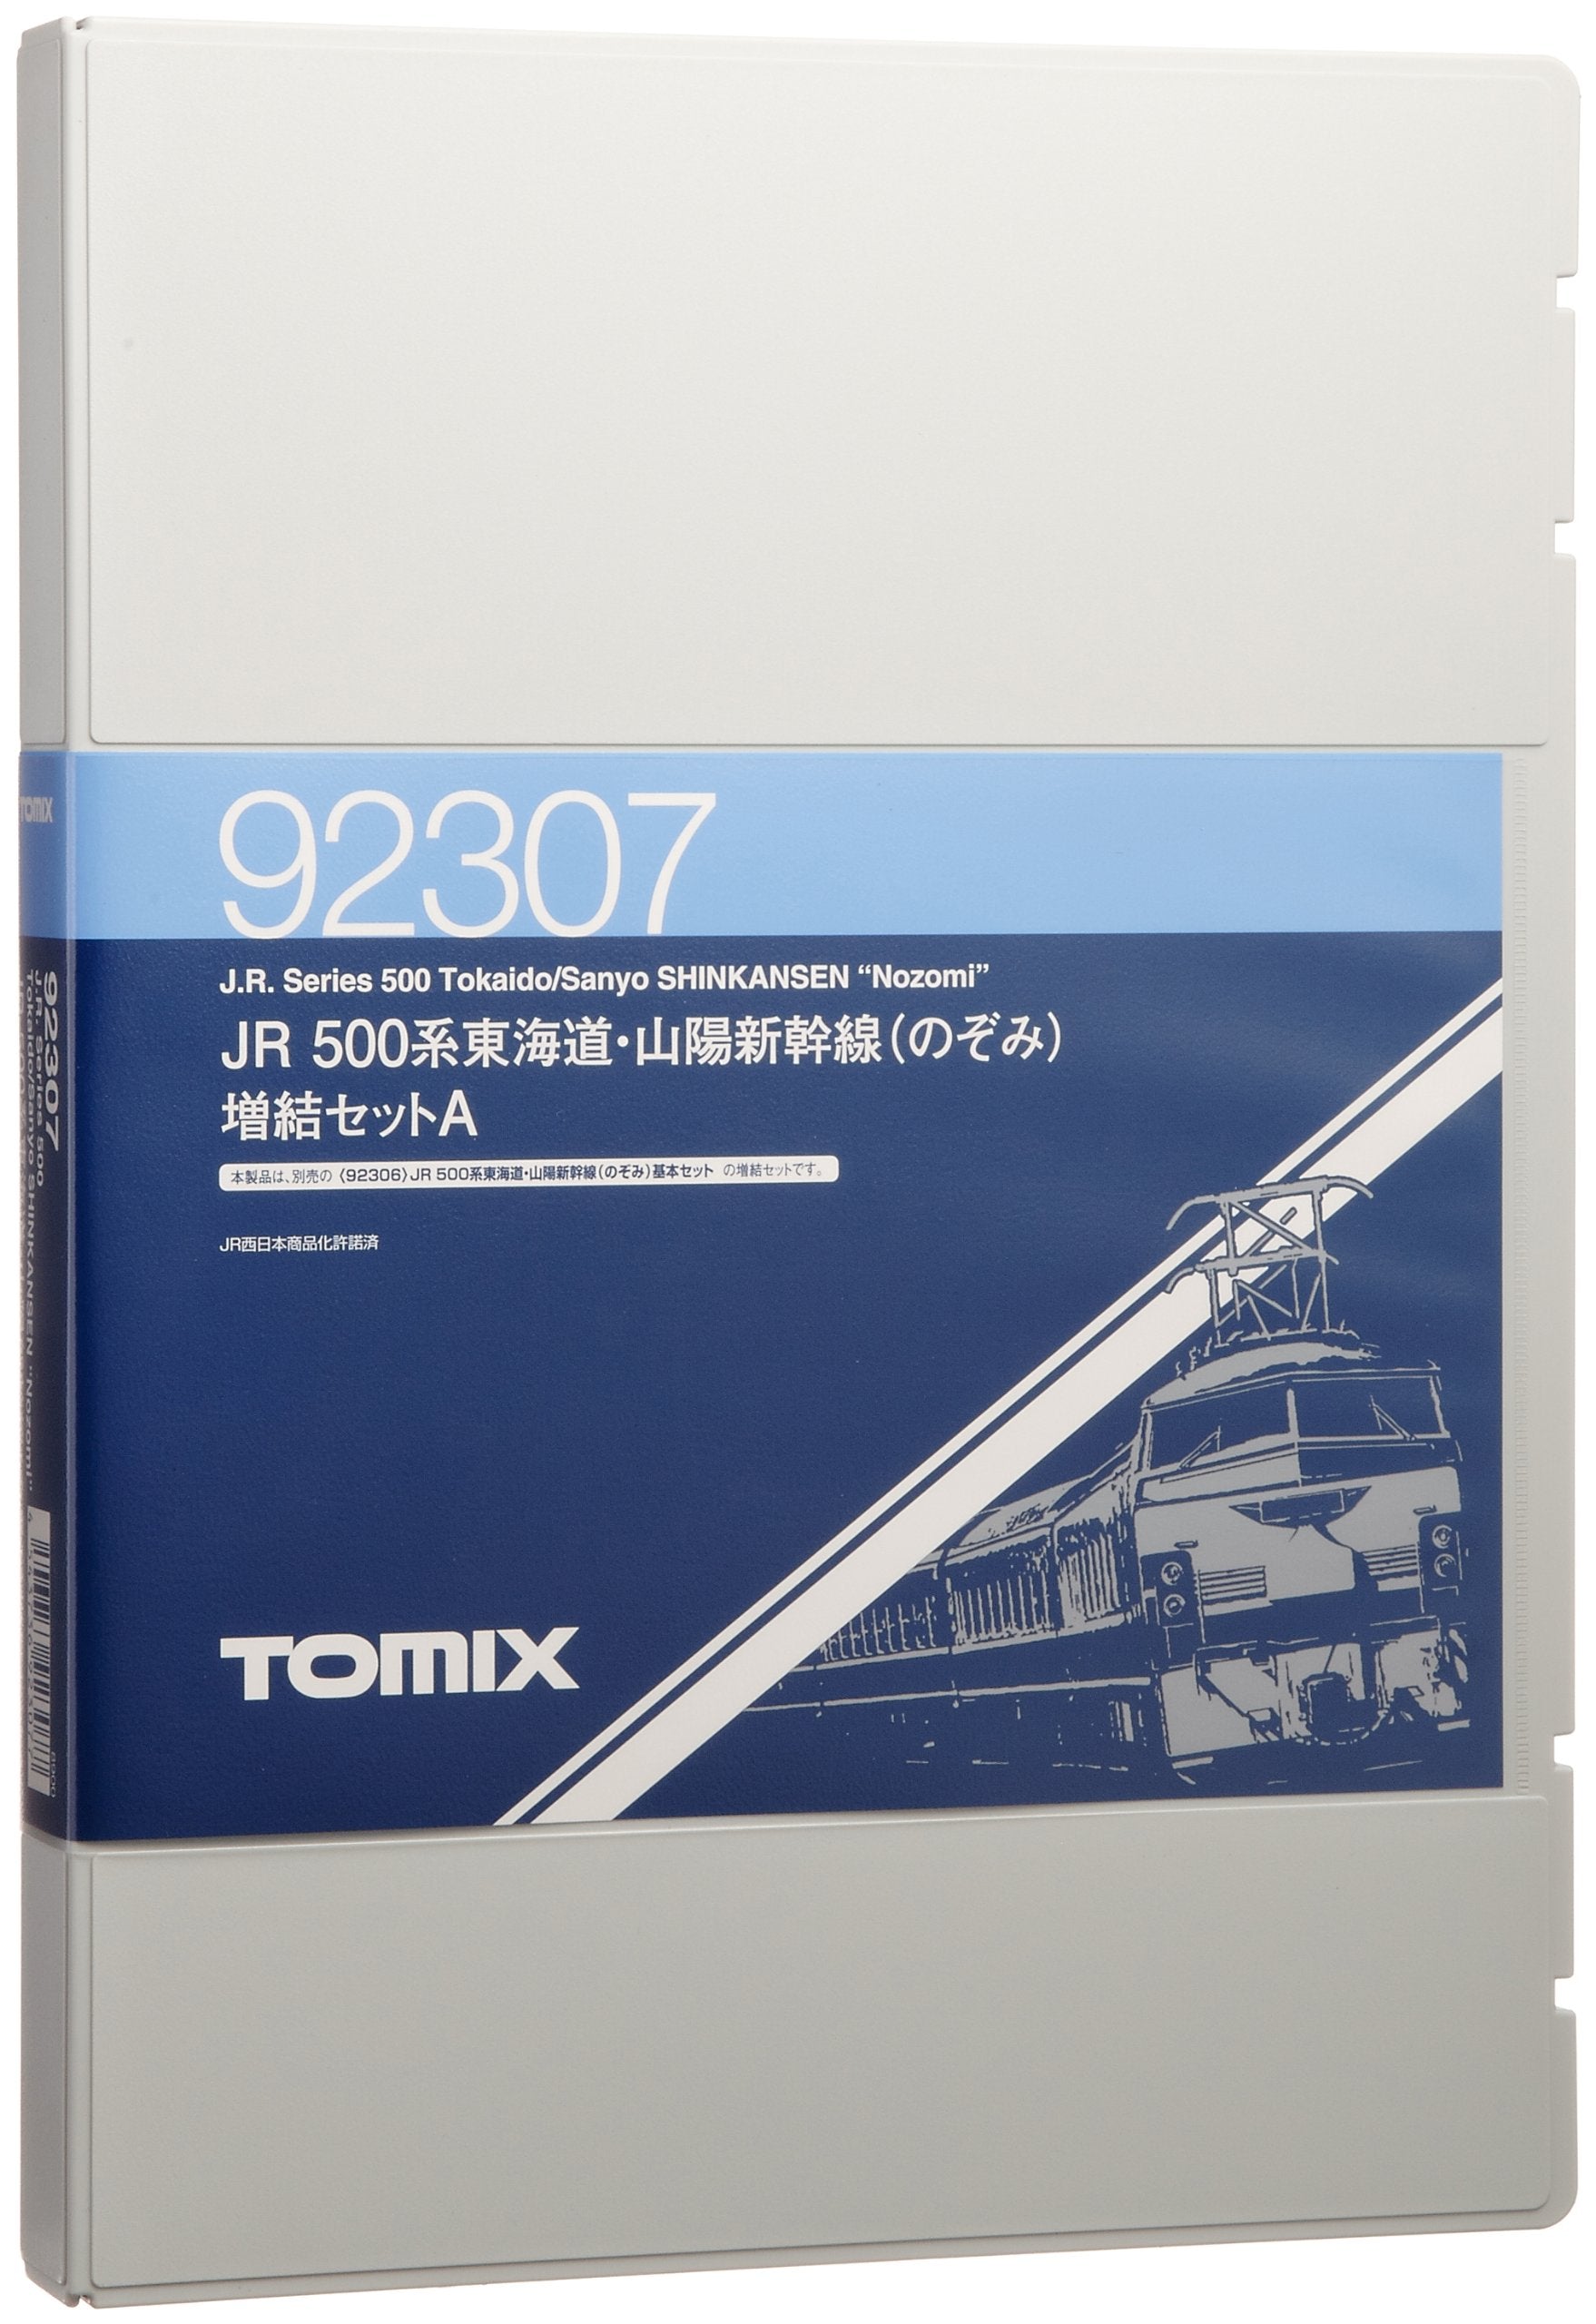 Tomytec Tomix N Gauge 500 Series Nozomi 4-Car Set Shinkansen 92307 Model Train